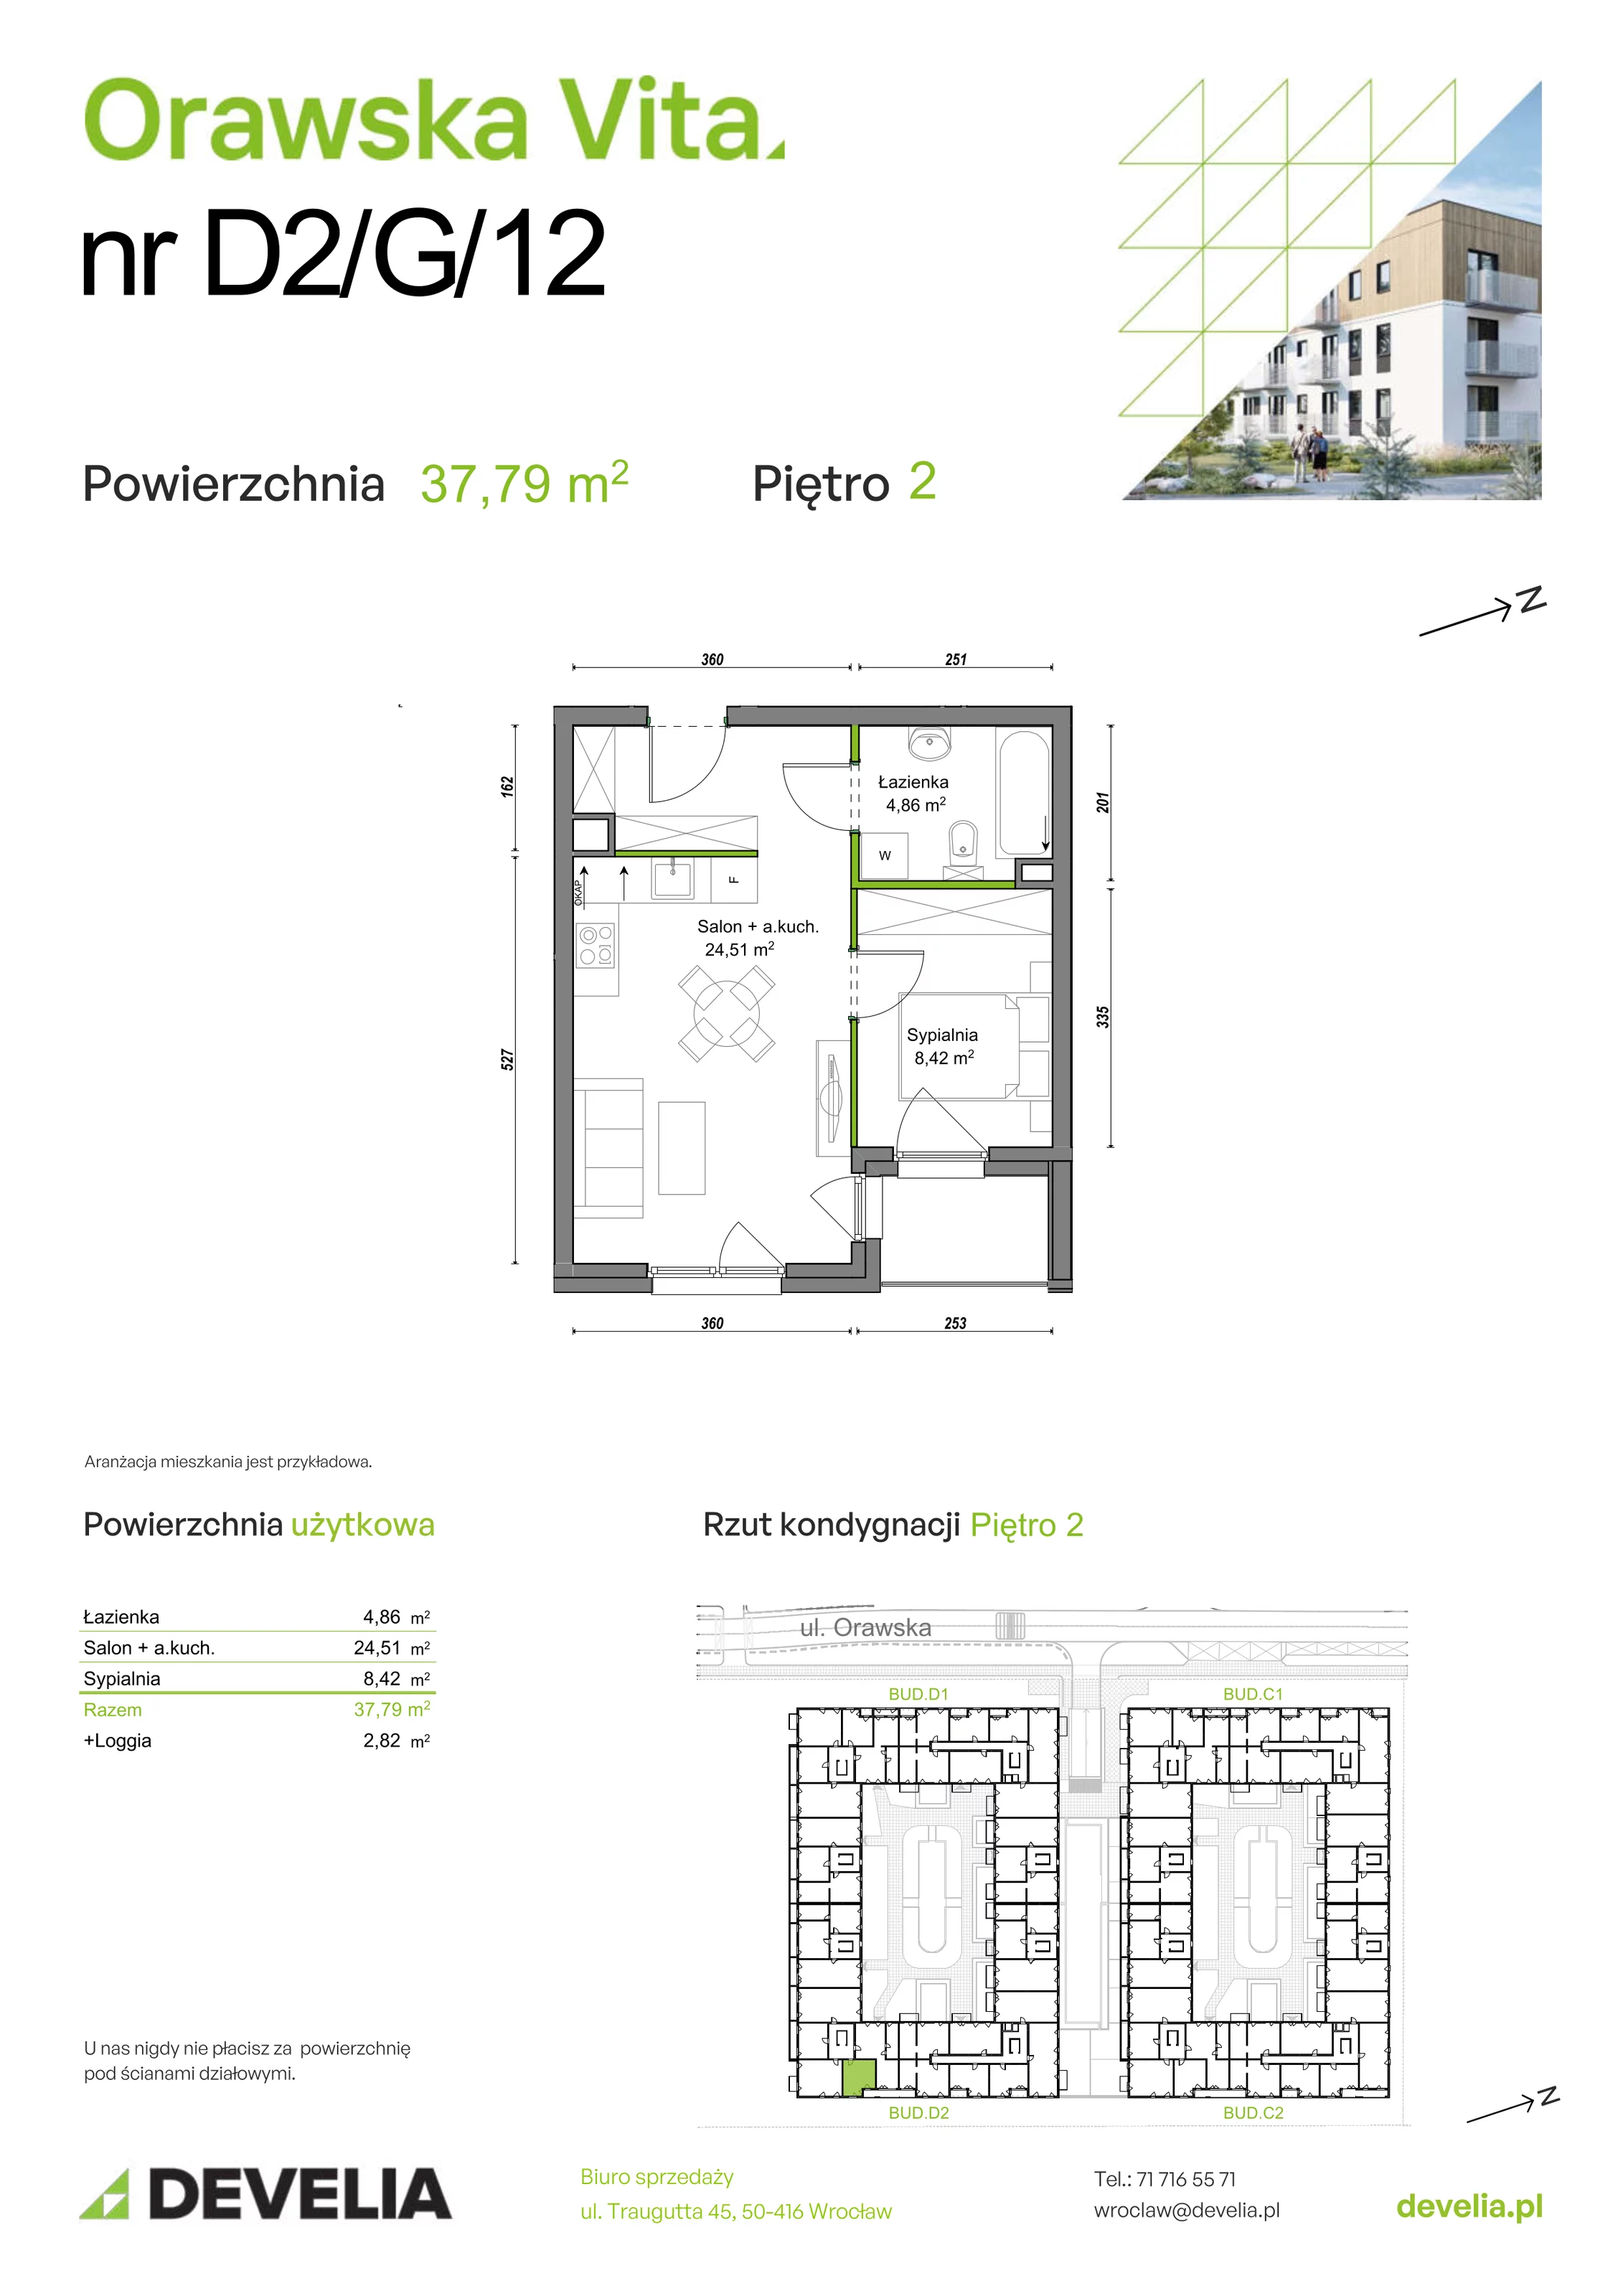 Mieszkanie 37,79 m², piętro 2, oferta nr D2/G/12, Orawska Vita, Wrocław, Ołtaszyn, Krzyki, ul. Orawska 73